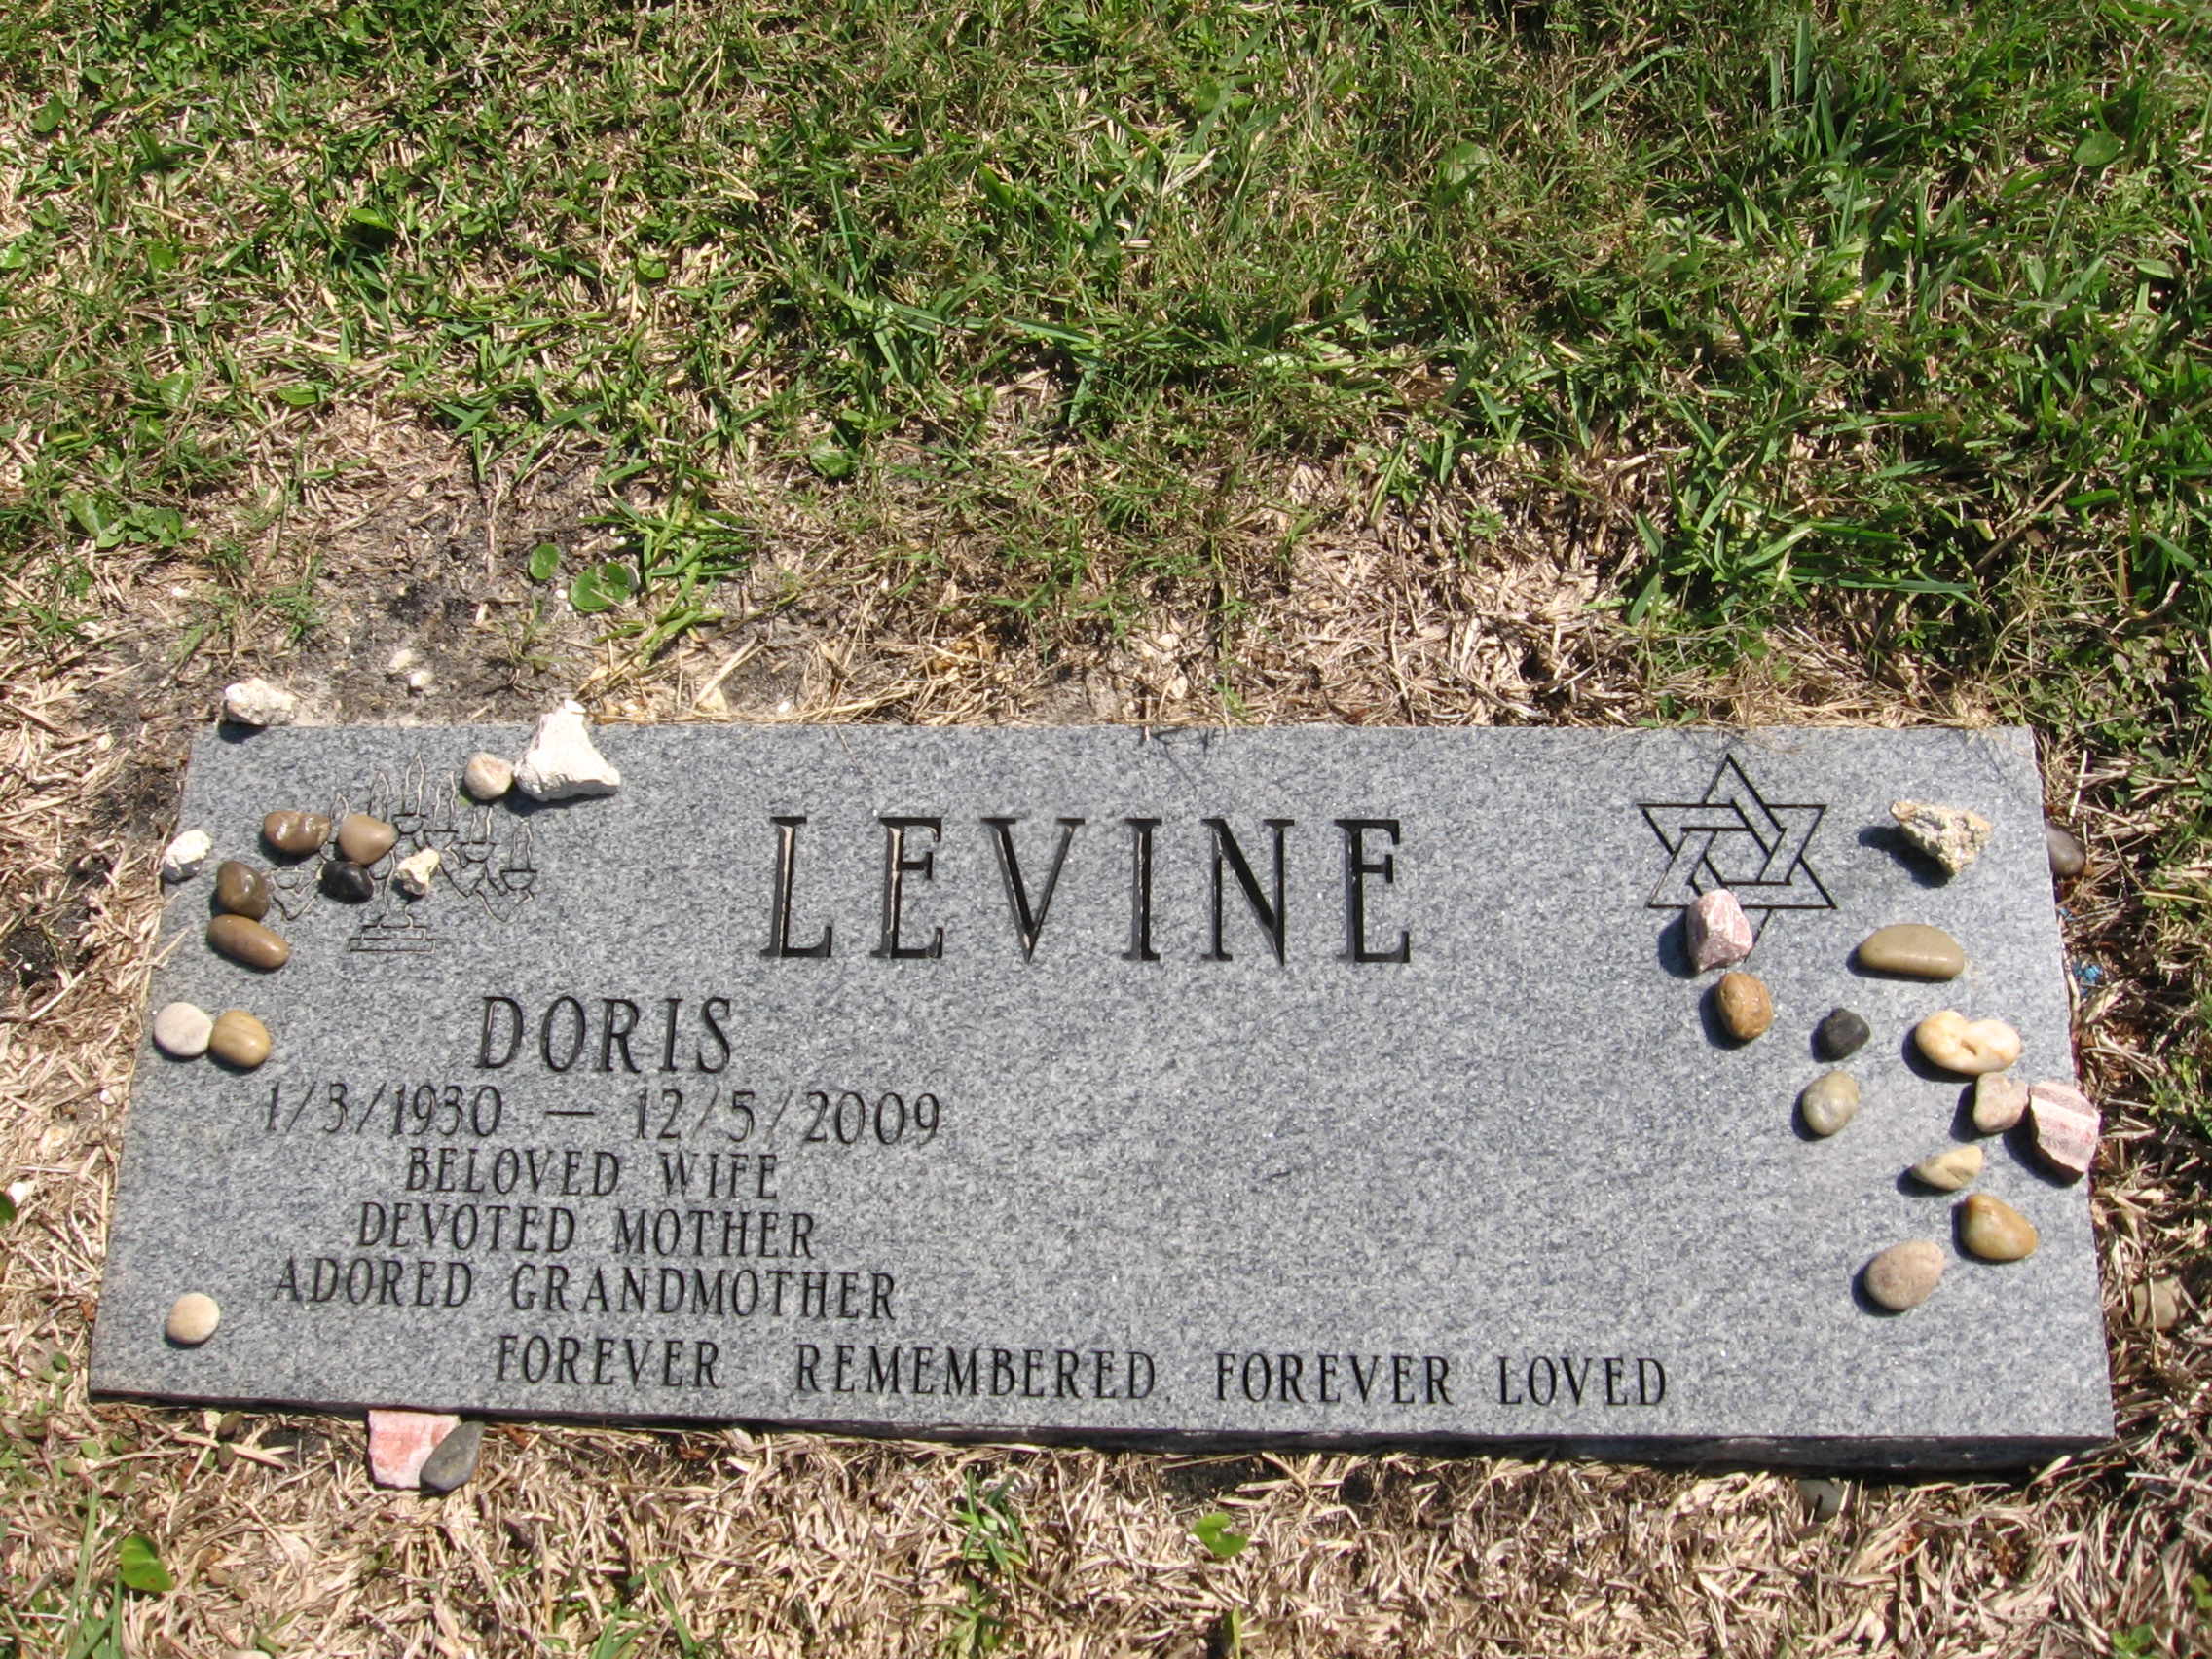 Doris Levine